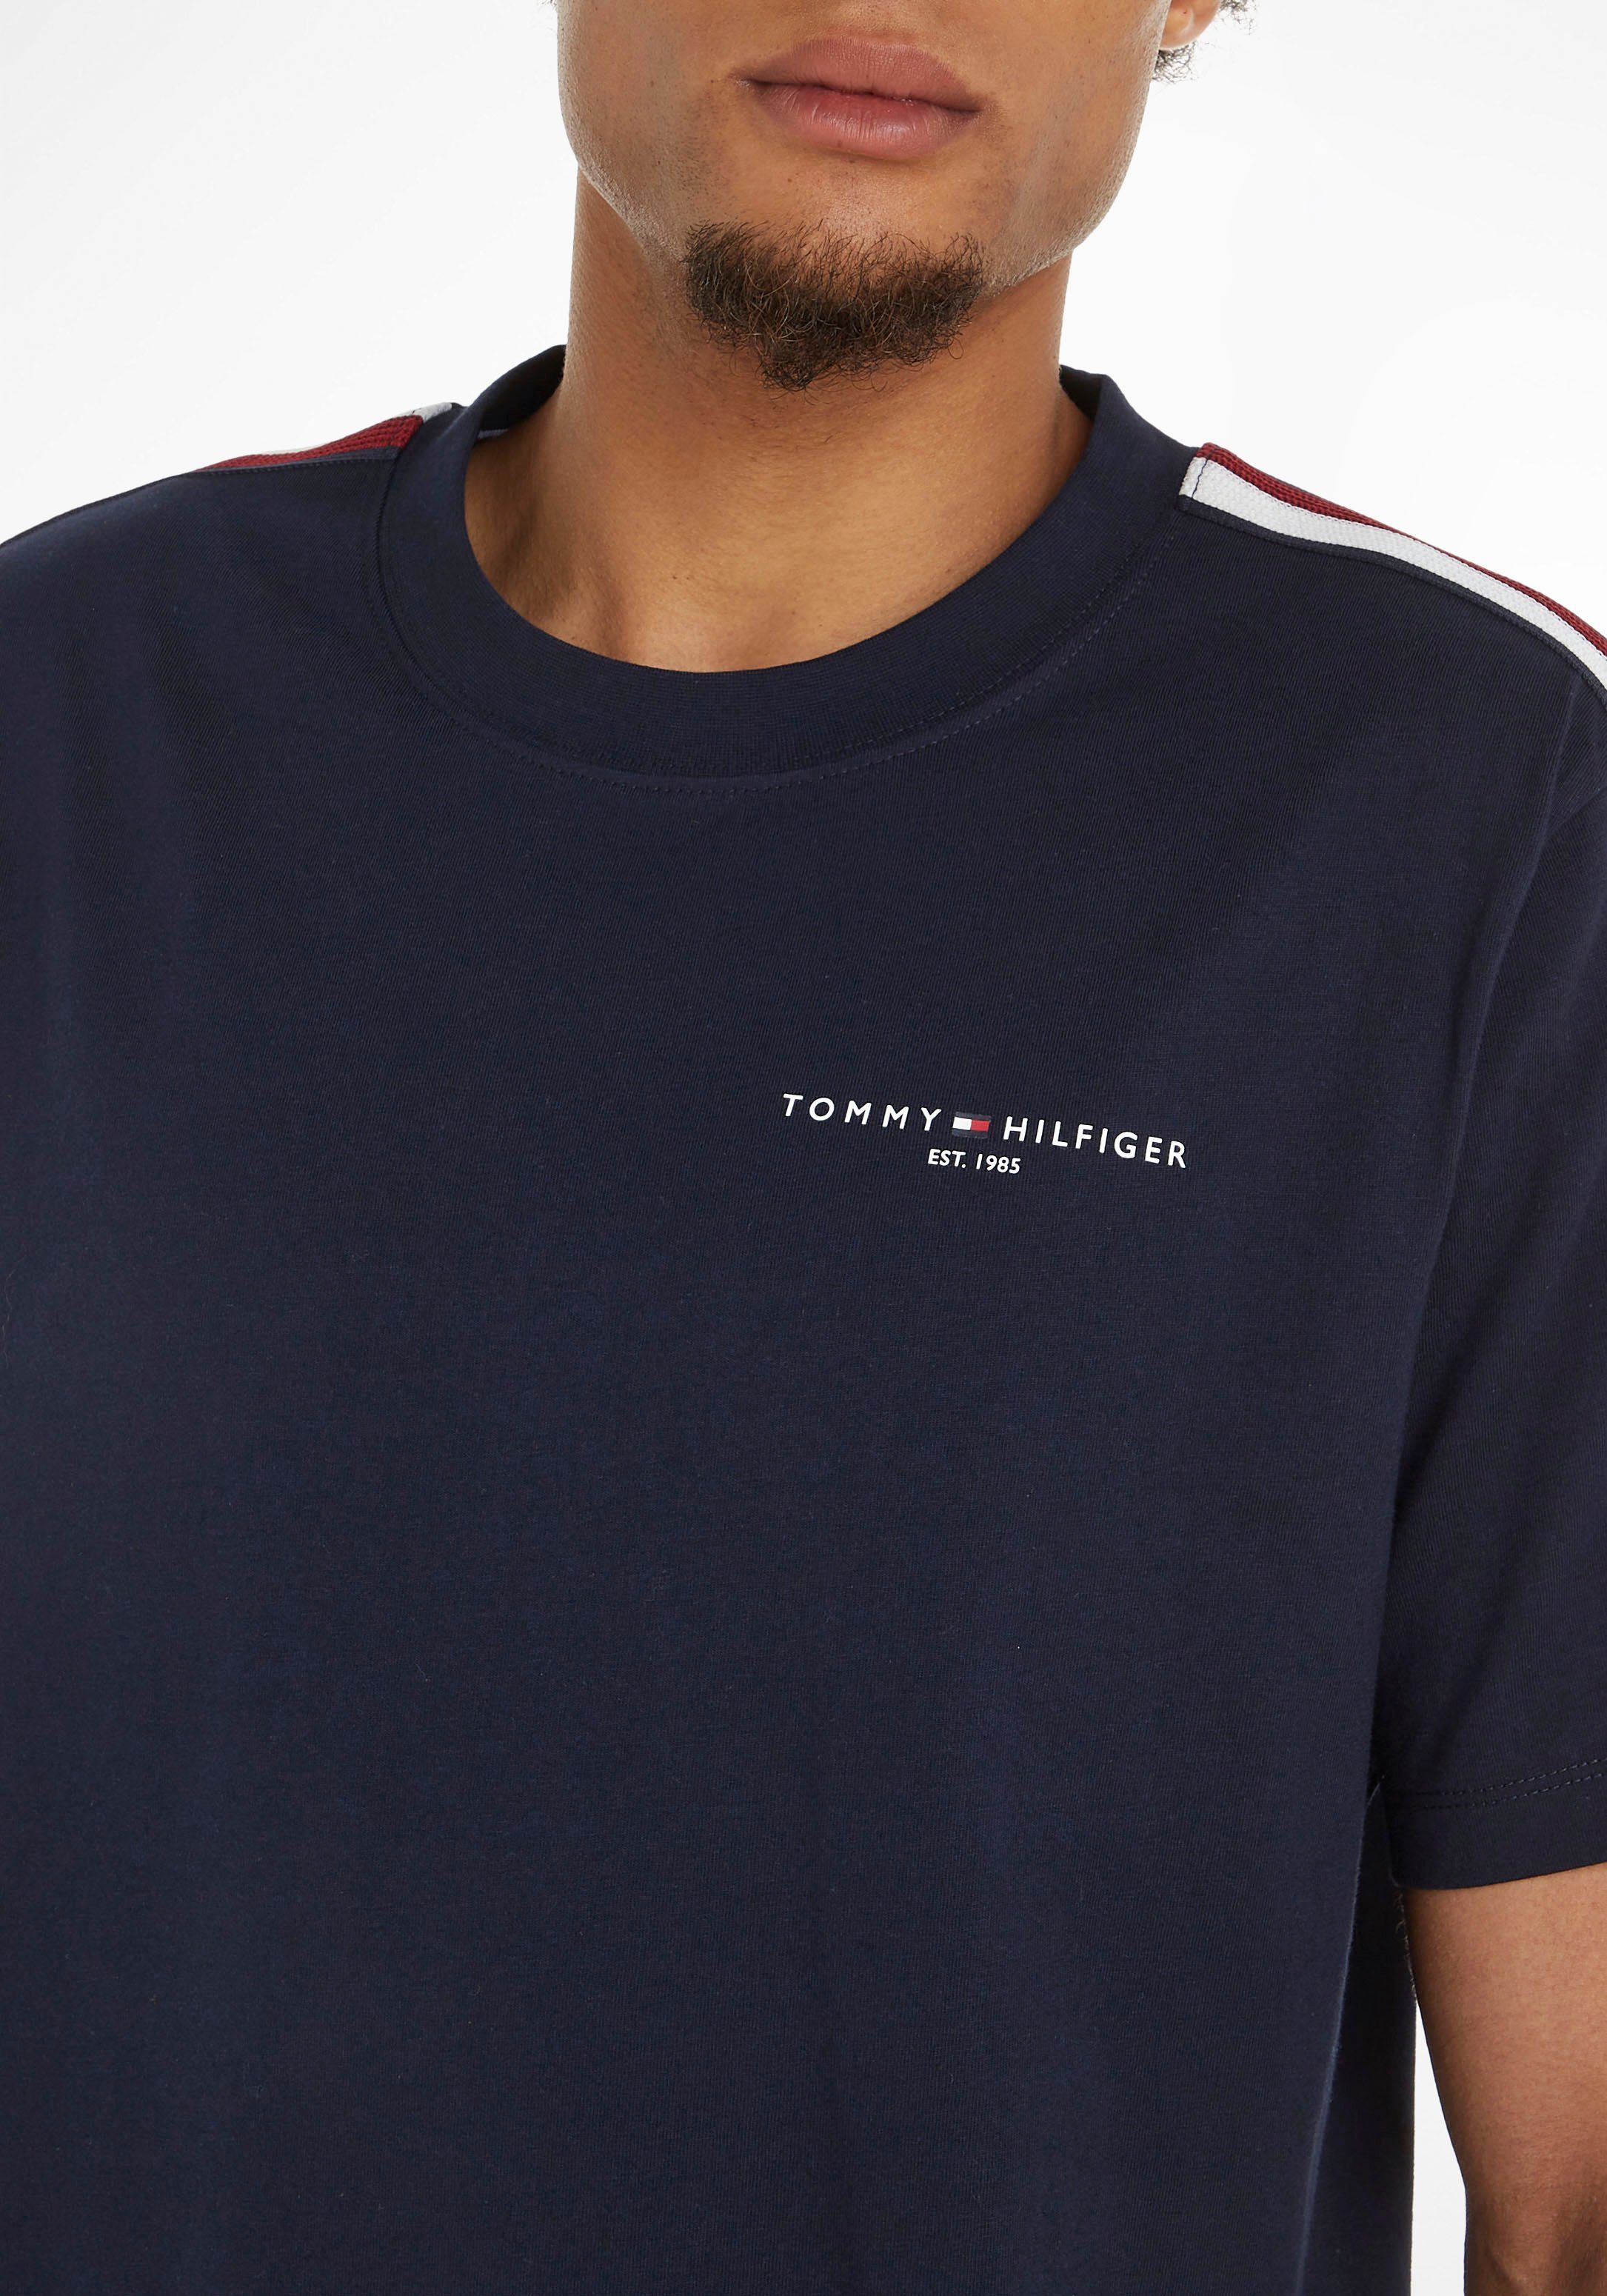 STRIPE GLOBAL Streifen Tommy beiden Ärmeln Rundhalsshirt in Sky TH-Farben an TEE PREP Hilfiger Desert mit